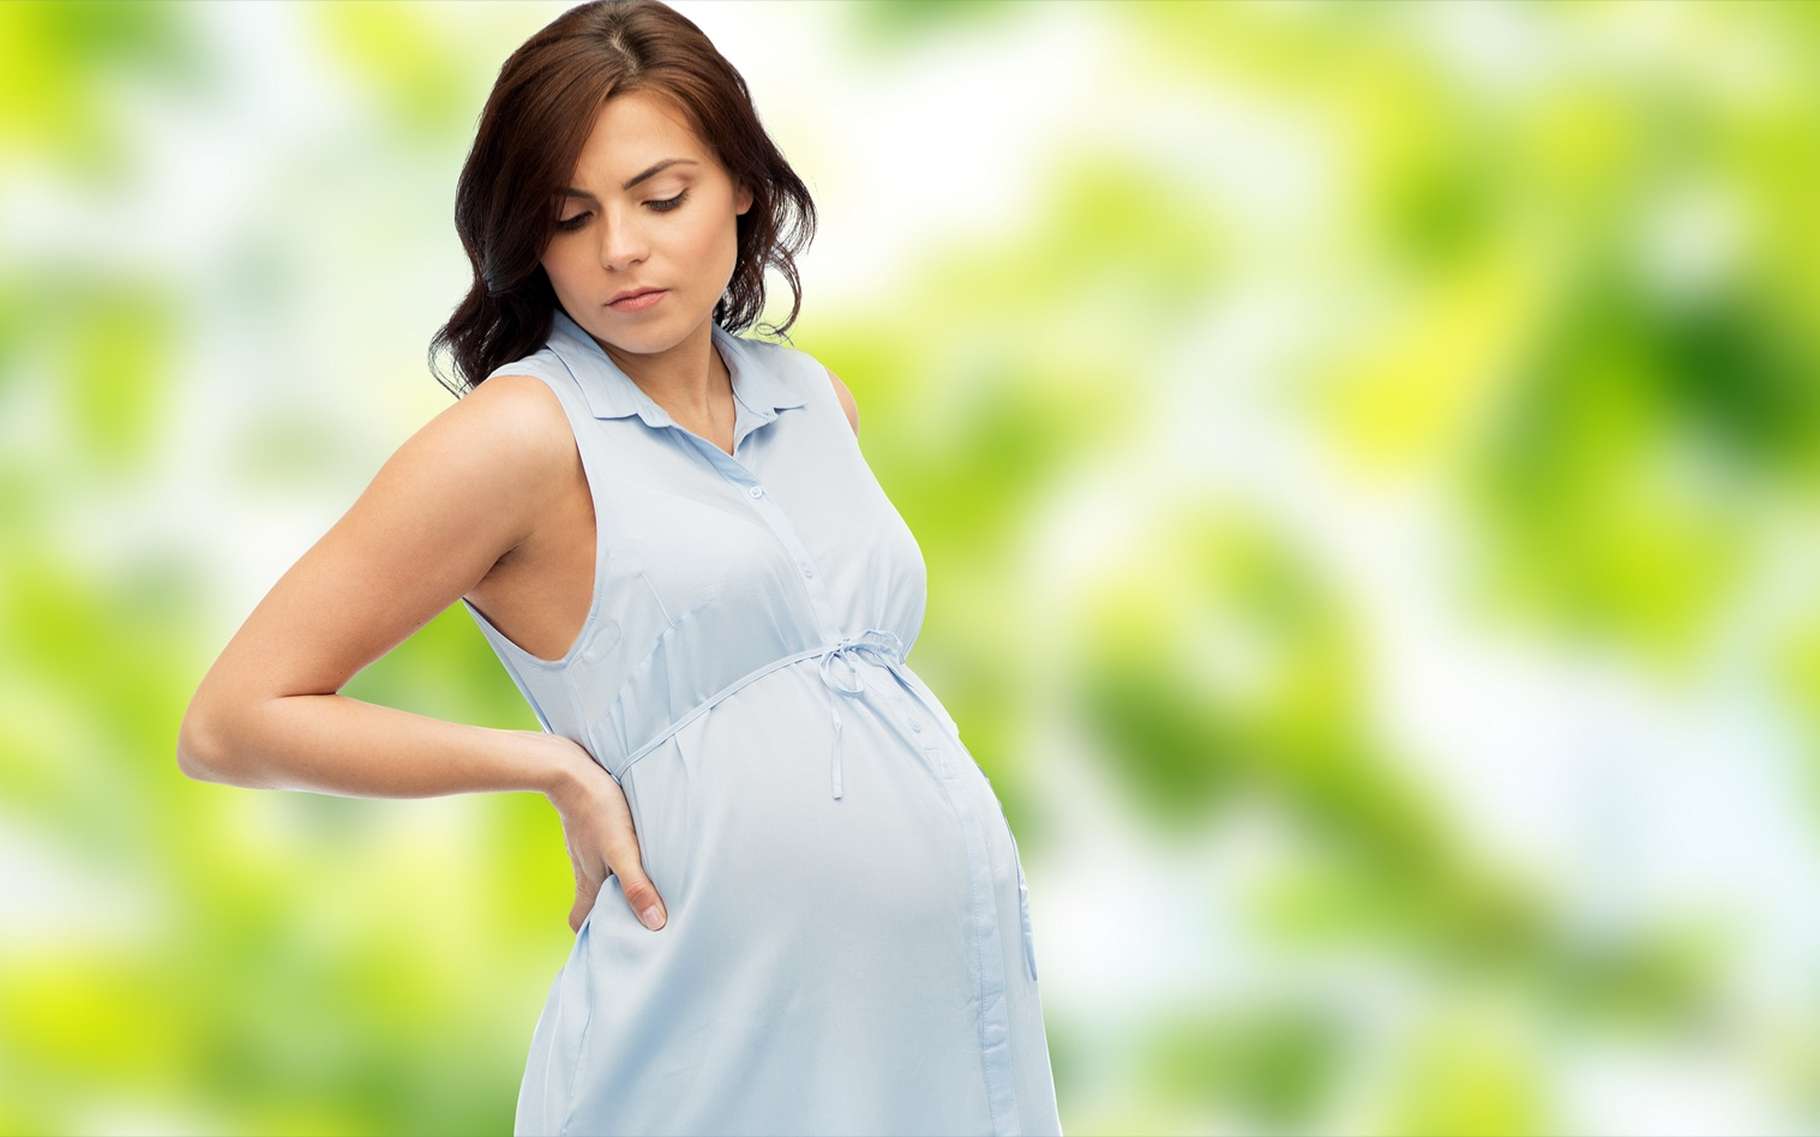 Le risque est important pour le bébé de rhésus positif lors d’une seconde grossesse d’une femme de rhésus négatif. C'est l'incompatibilité rhésus. © Syda Productions, Shutterstock